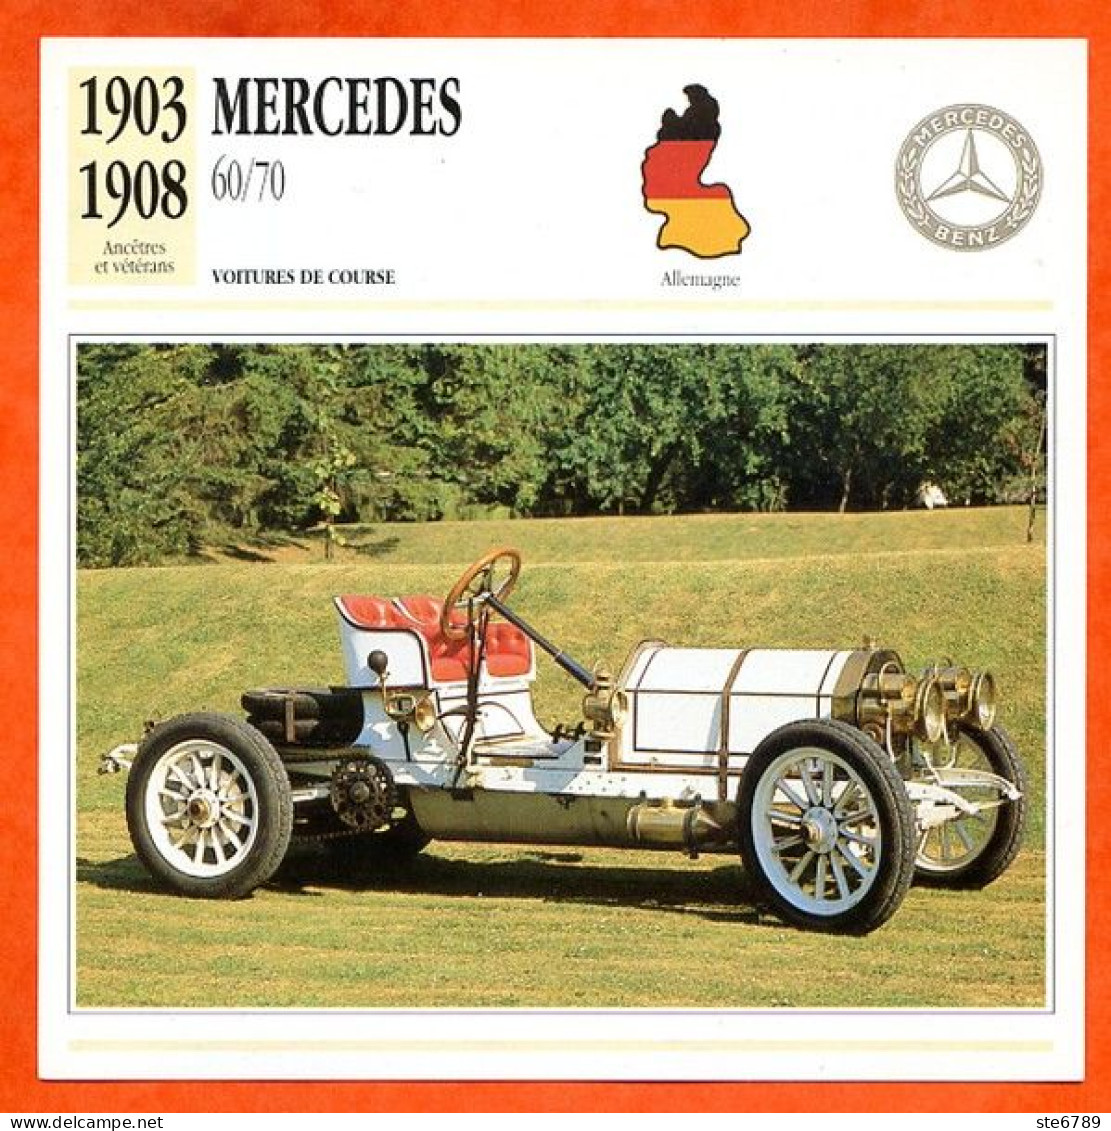 MERCEDES 60/70 1903 Voiture De Course Allemagne Fiche Technique Automobile - Coches